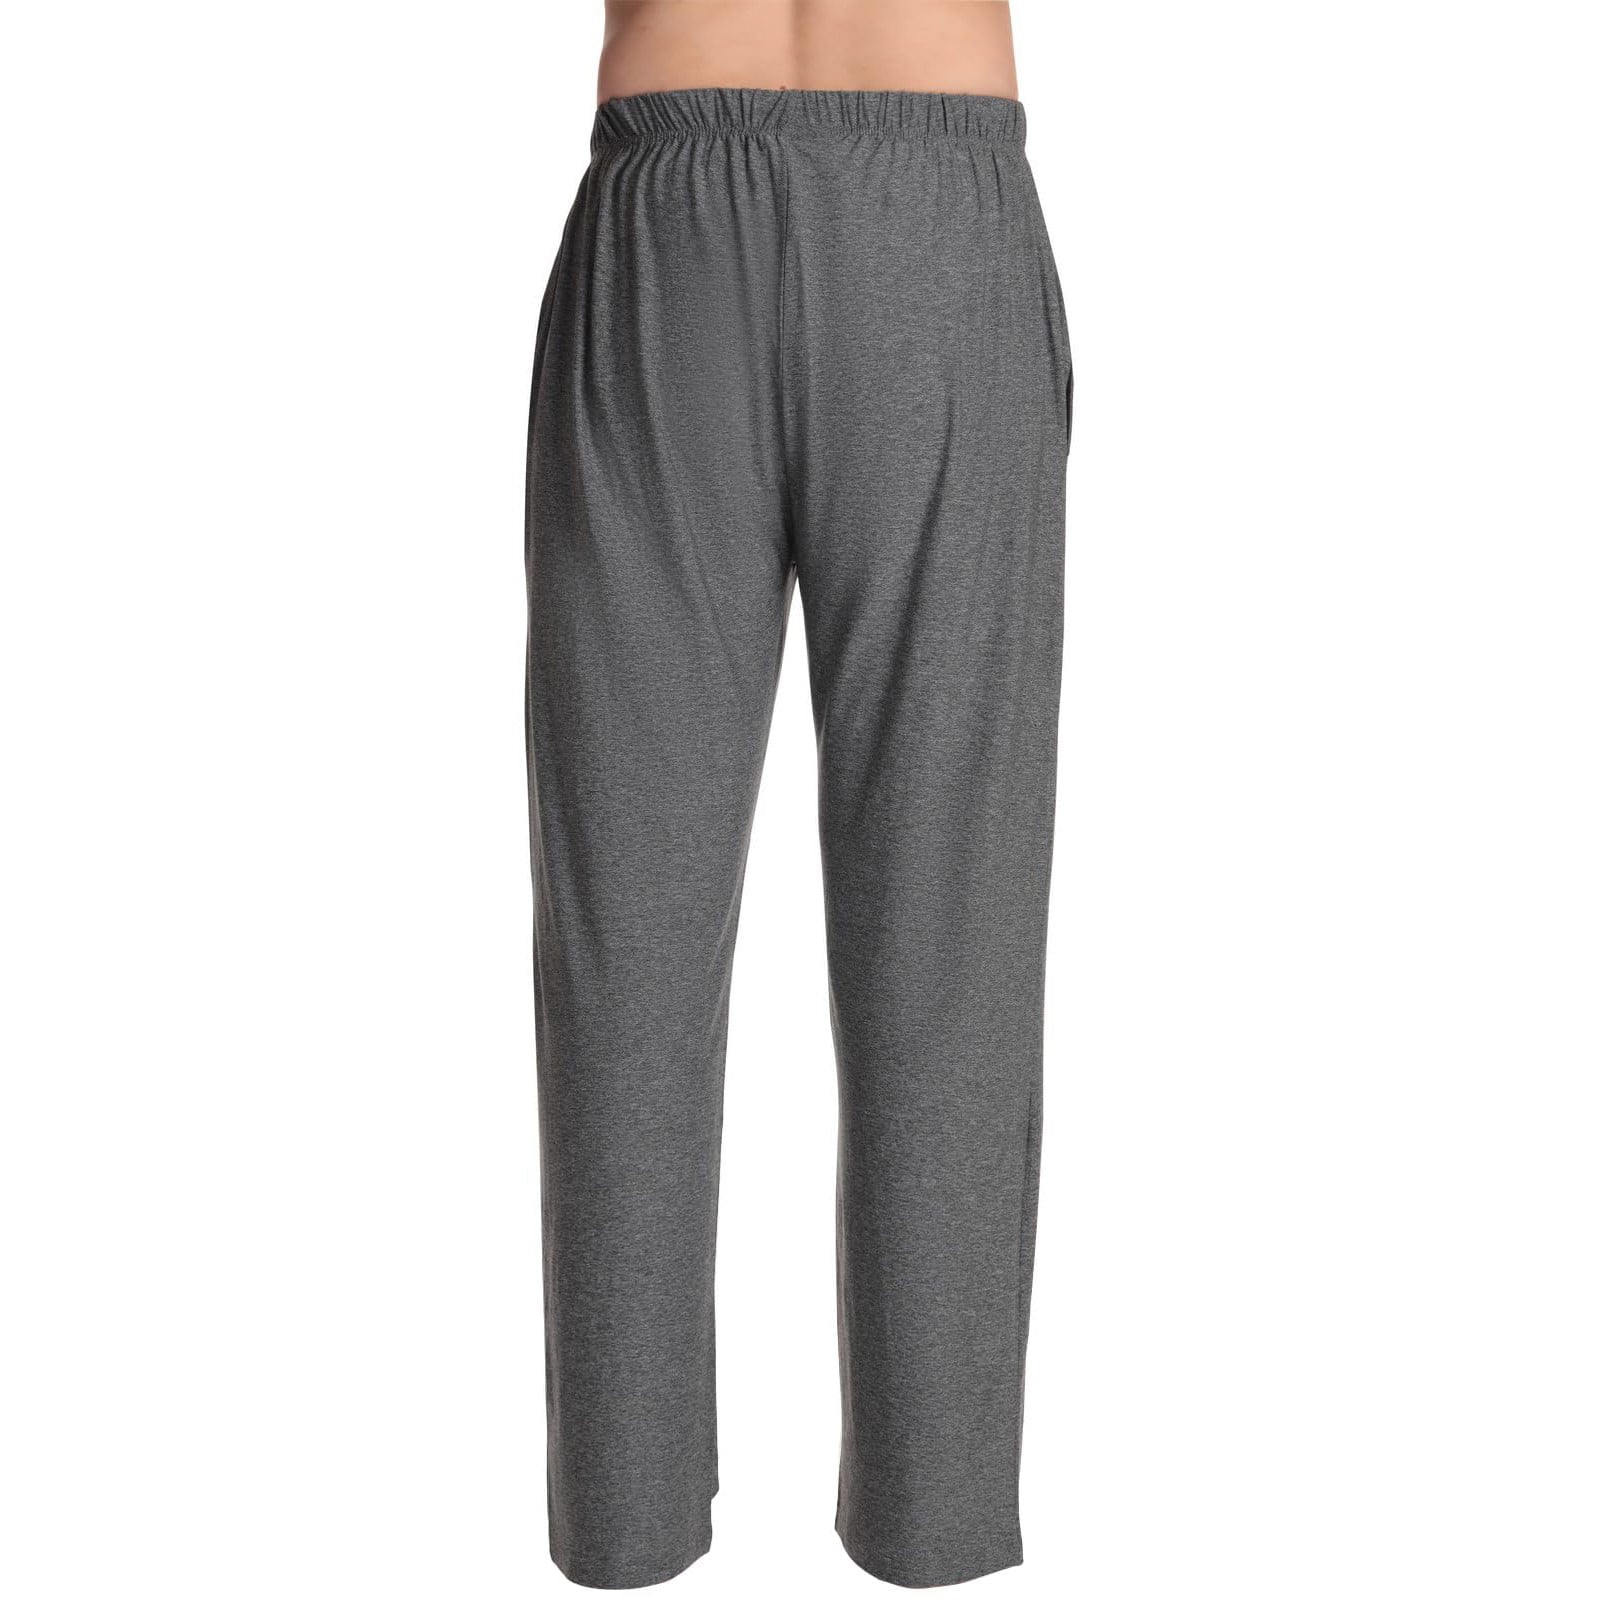 Qcmgmg Buffalo Plaid Pajama Pants Drawstring Soft Pj Pants